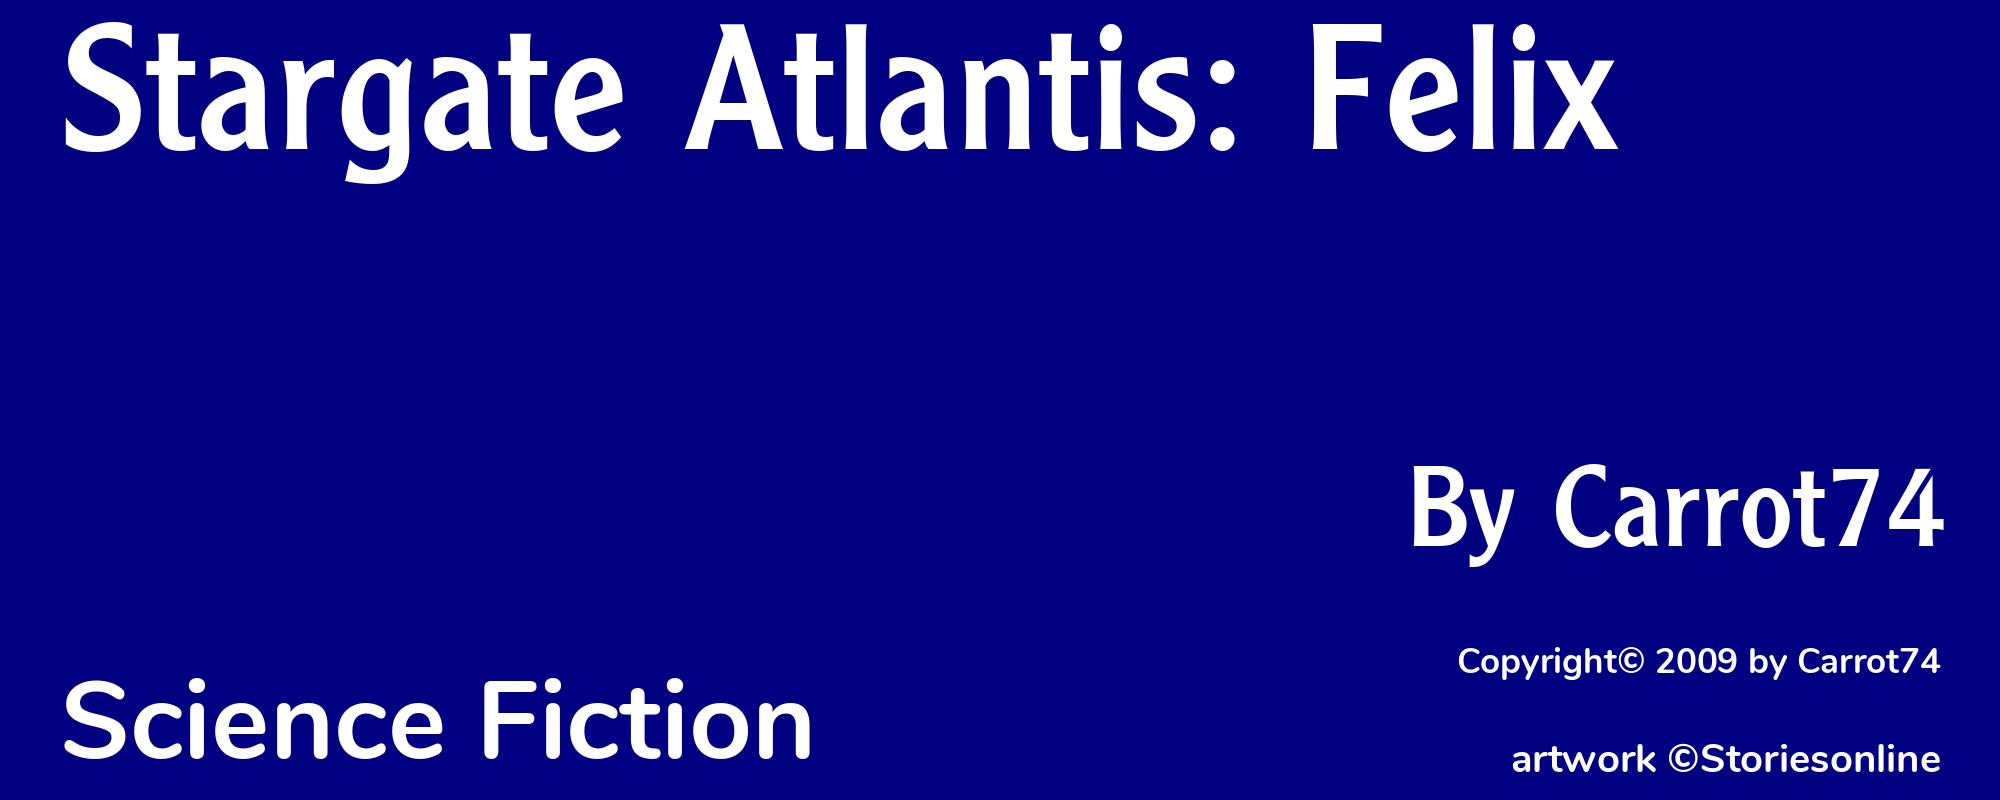 Stargate Atlantis: Felix - Cover